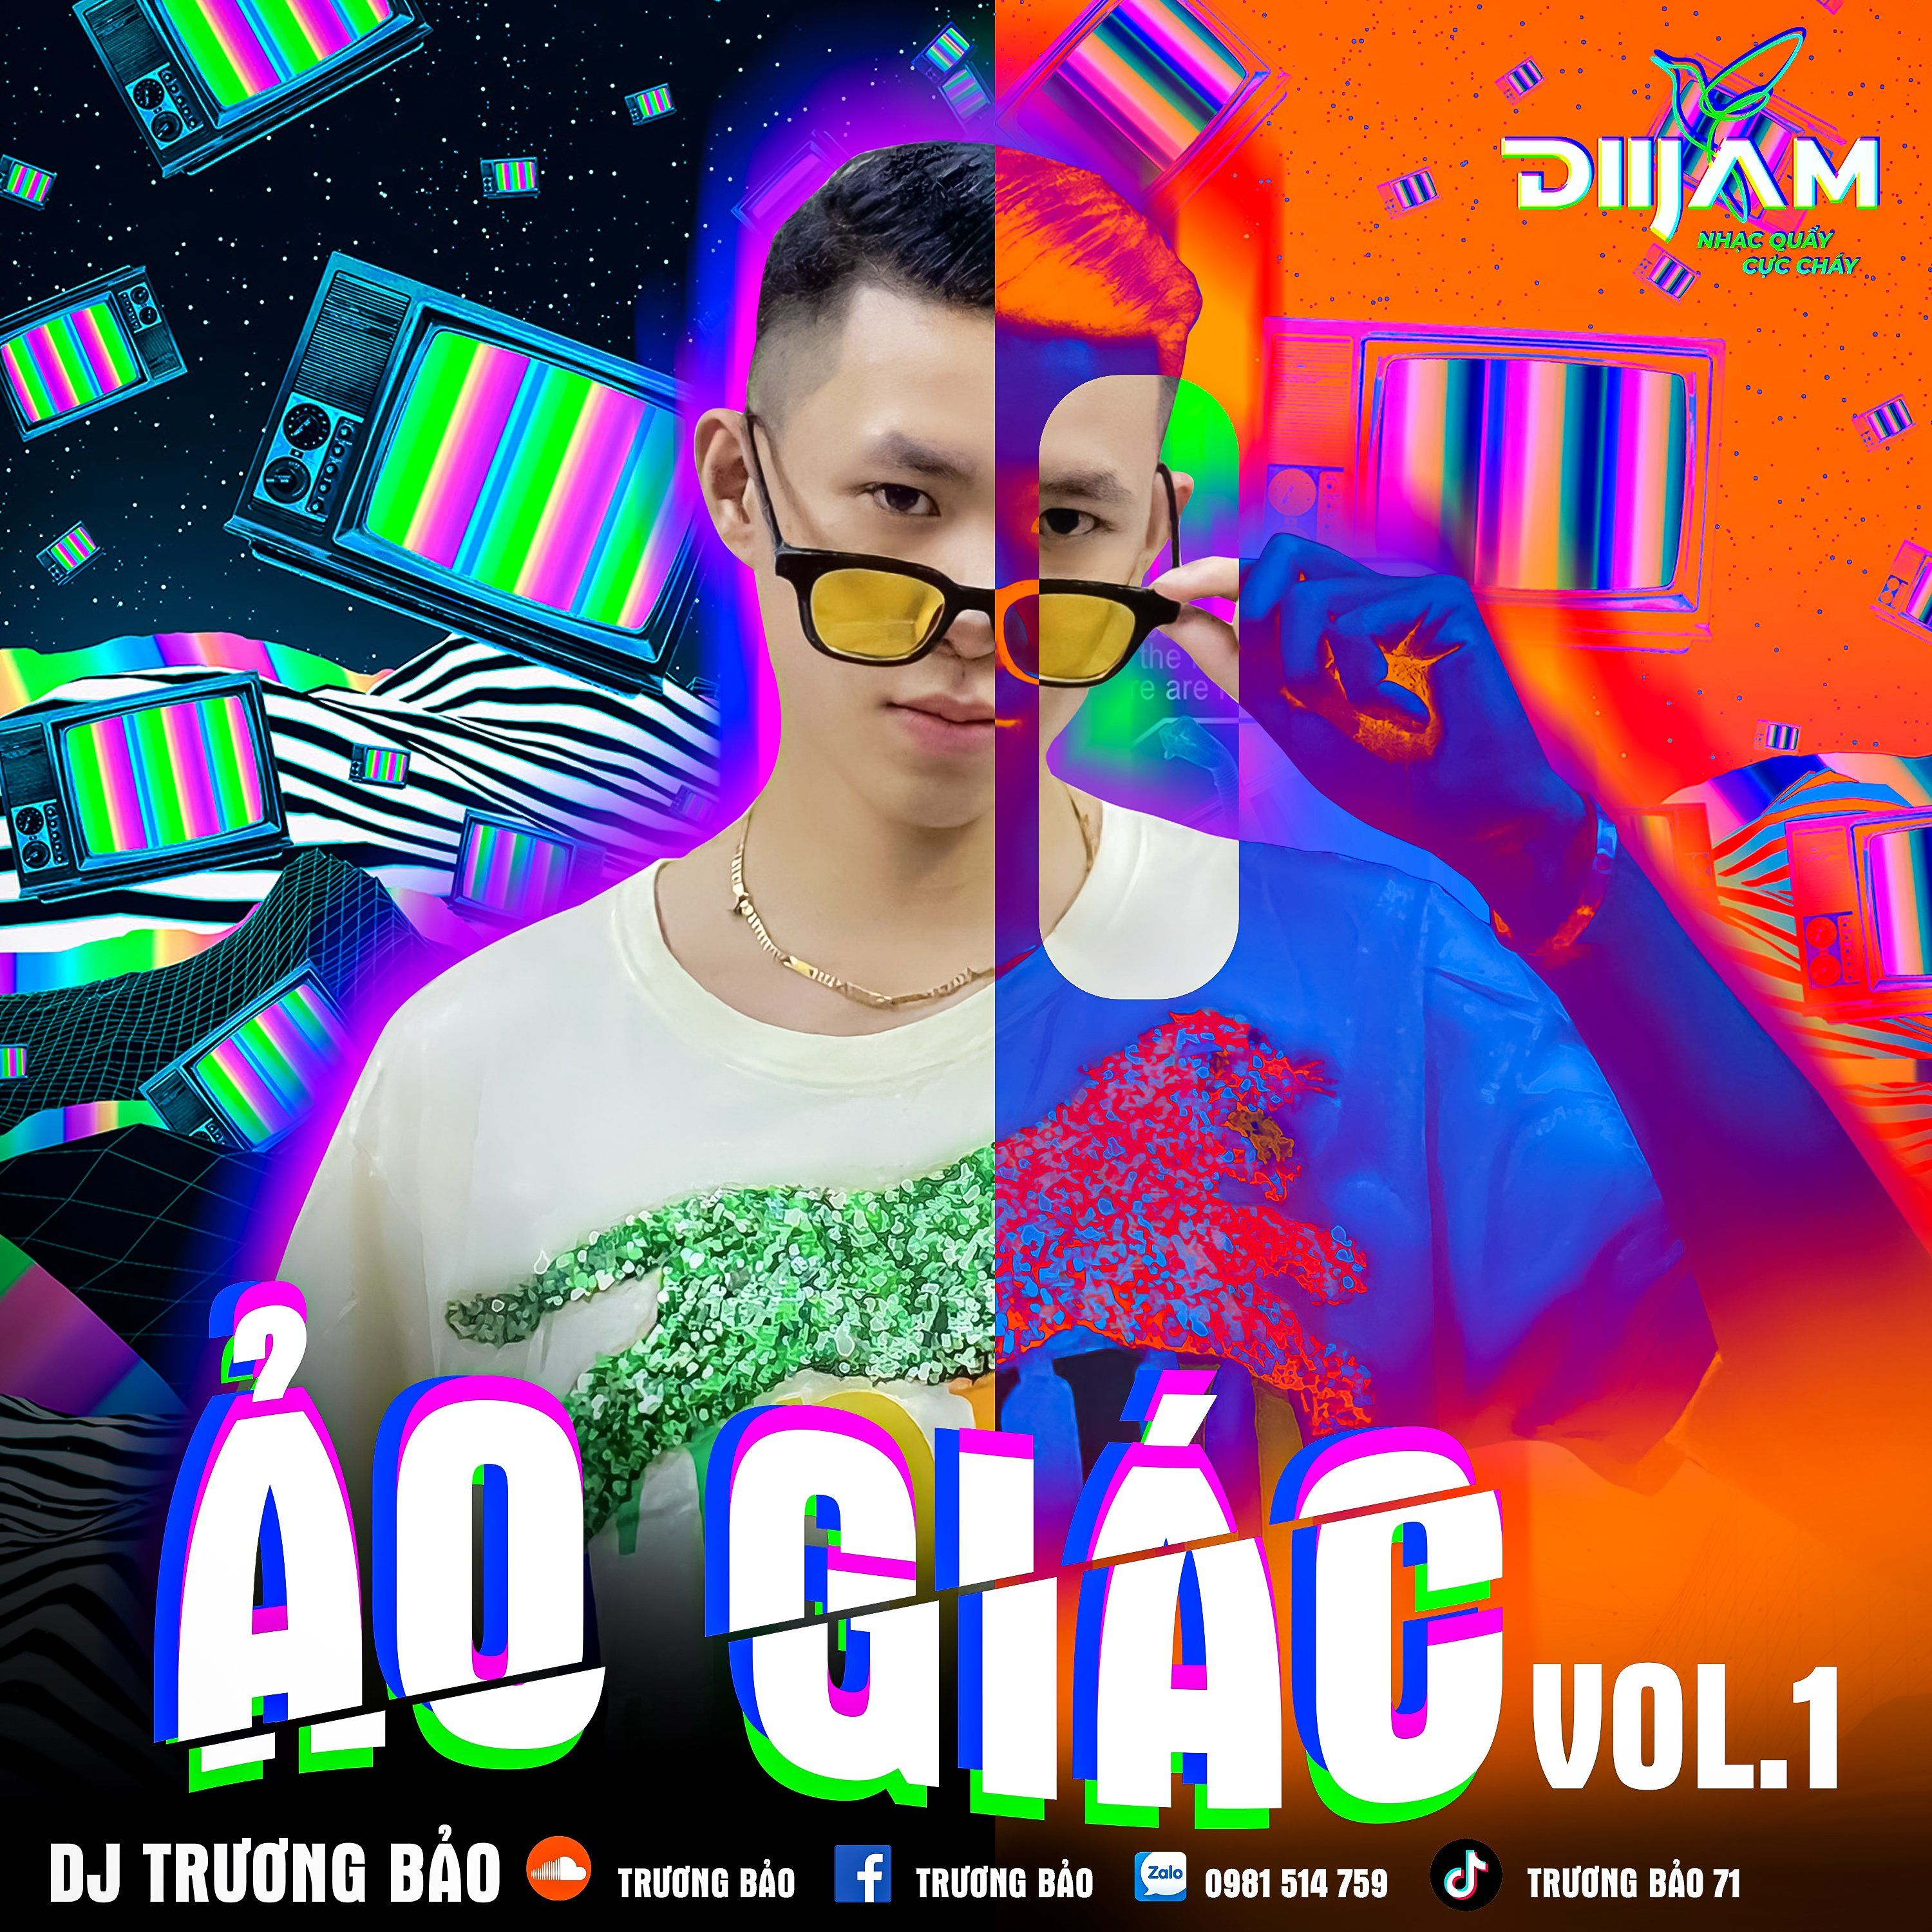 డౌన్లోడ్ Ảo Giác Vol 1 - DJ Trương Bảo (Nonstop Diijam)